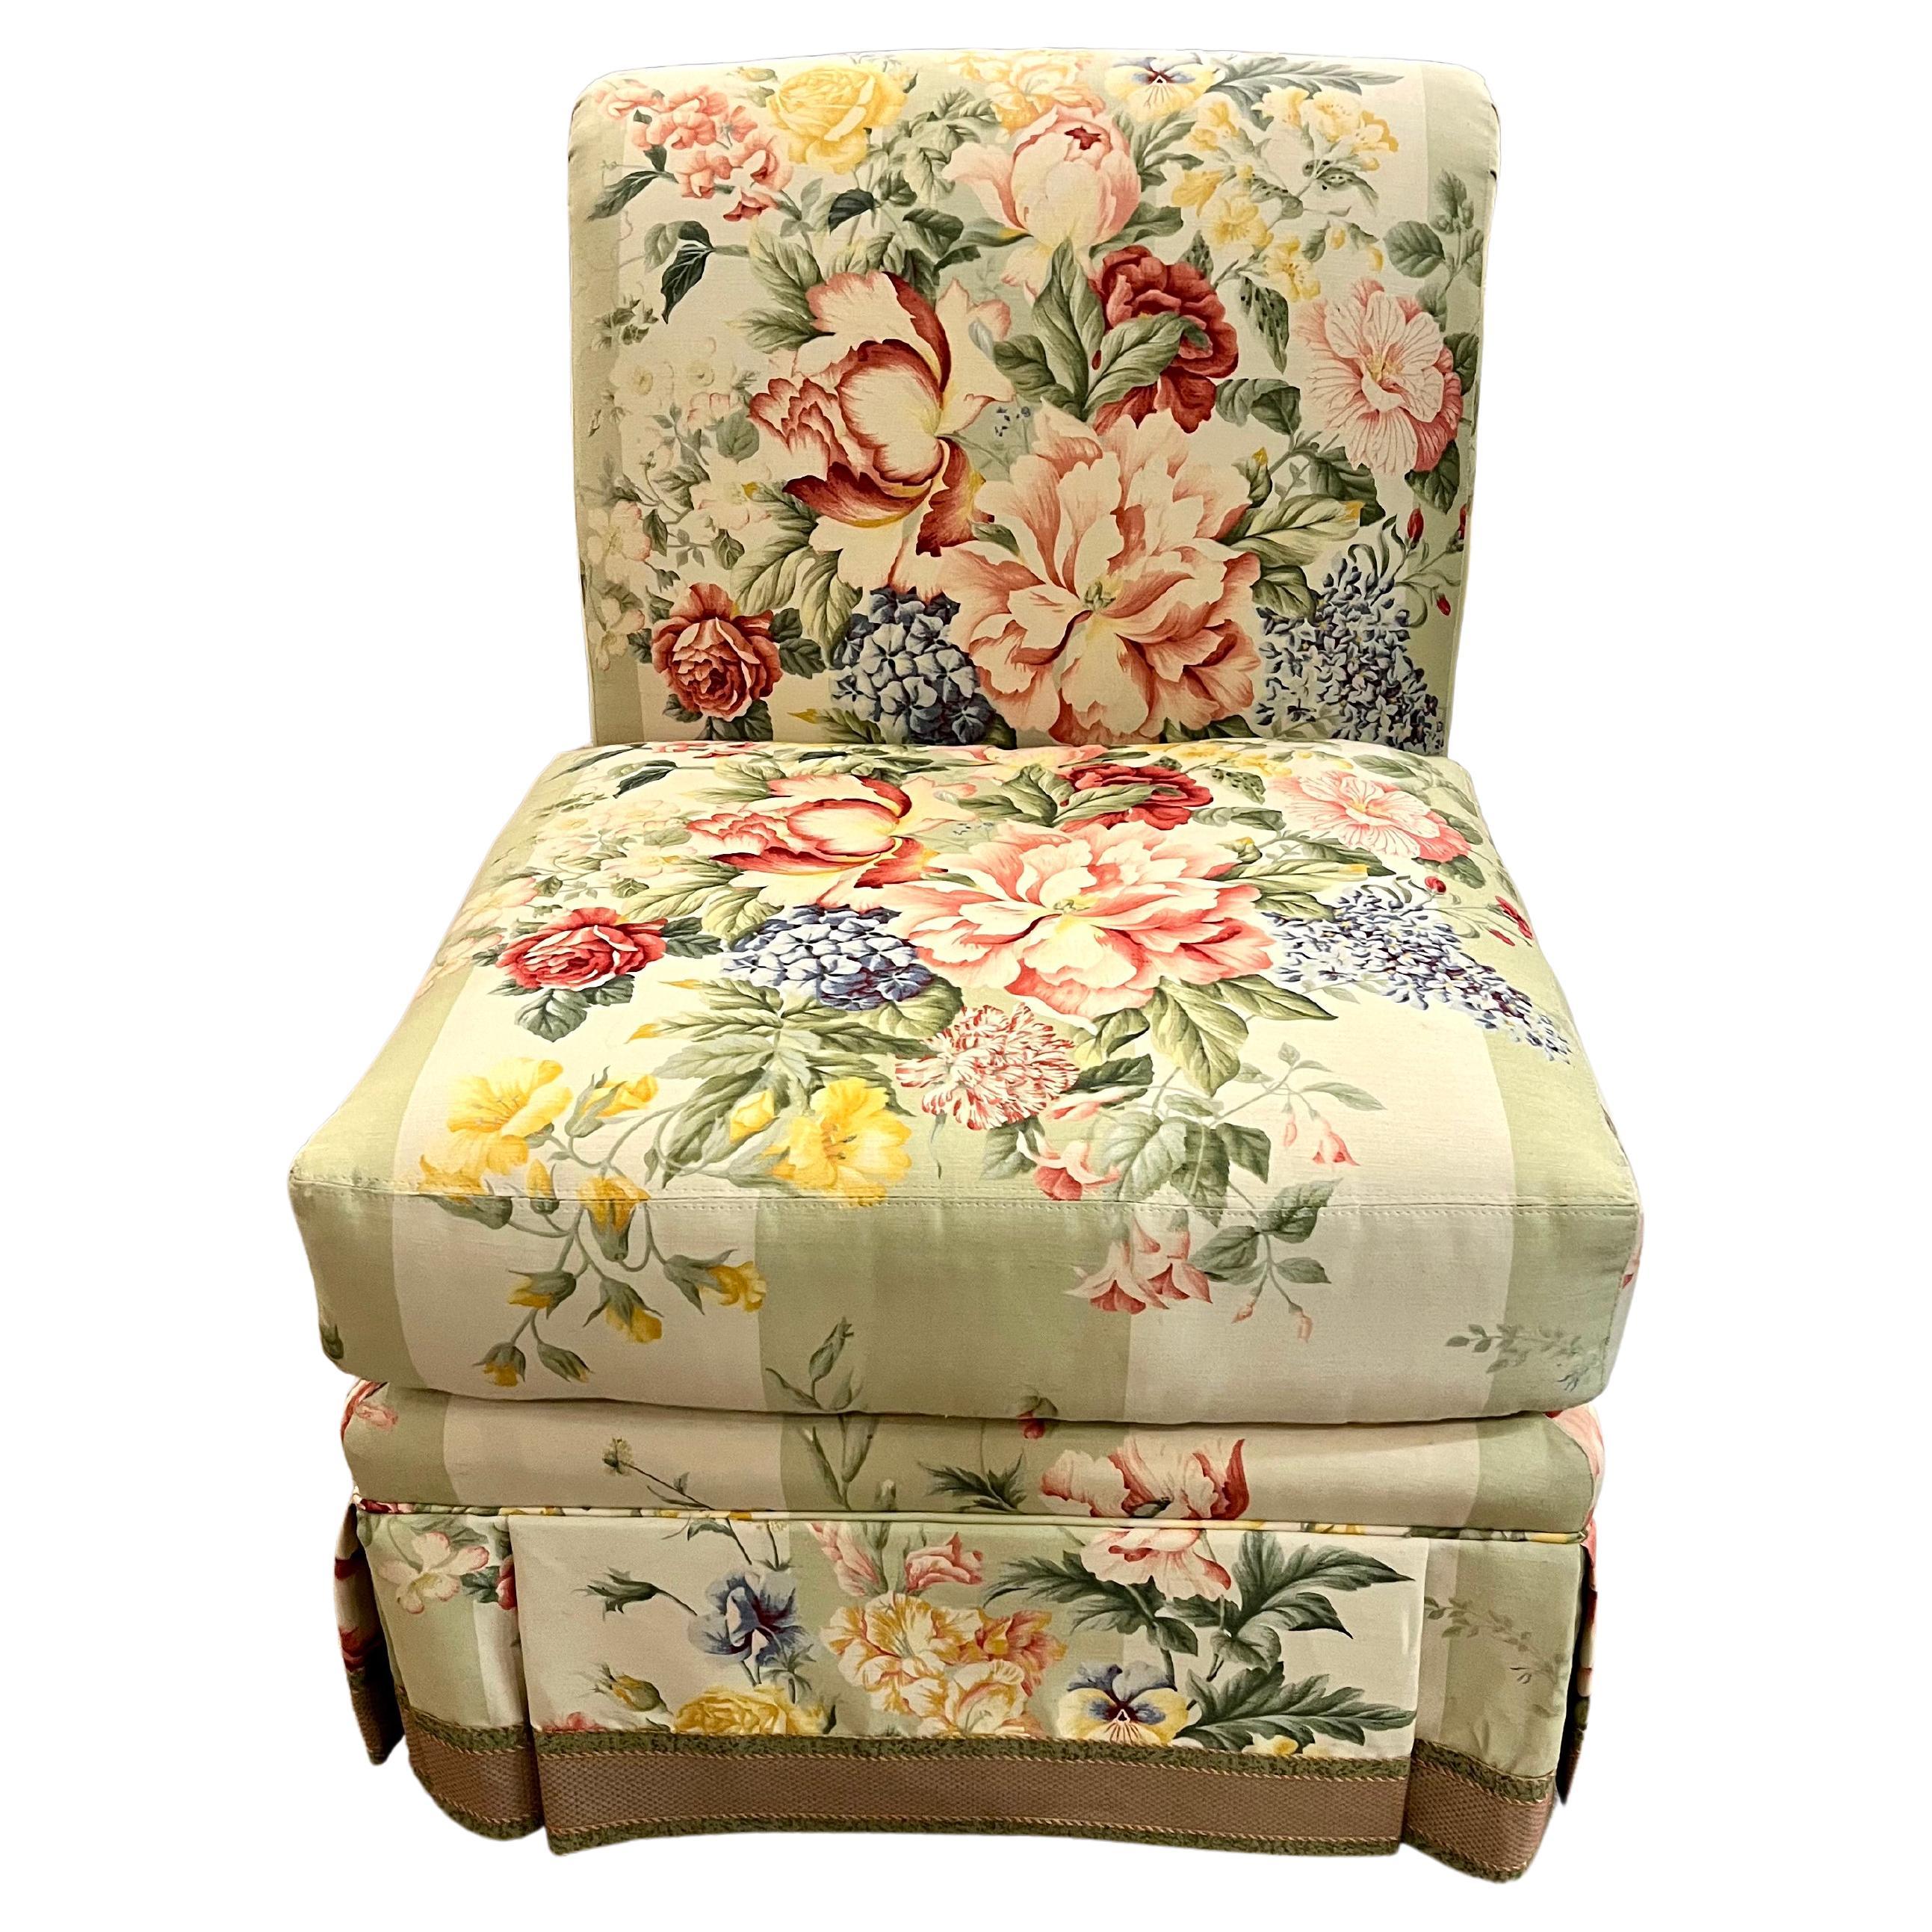 Chintz Upholstered Vintage Slipper Chair